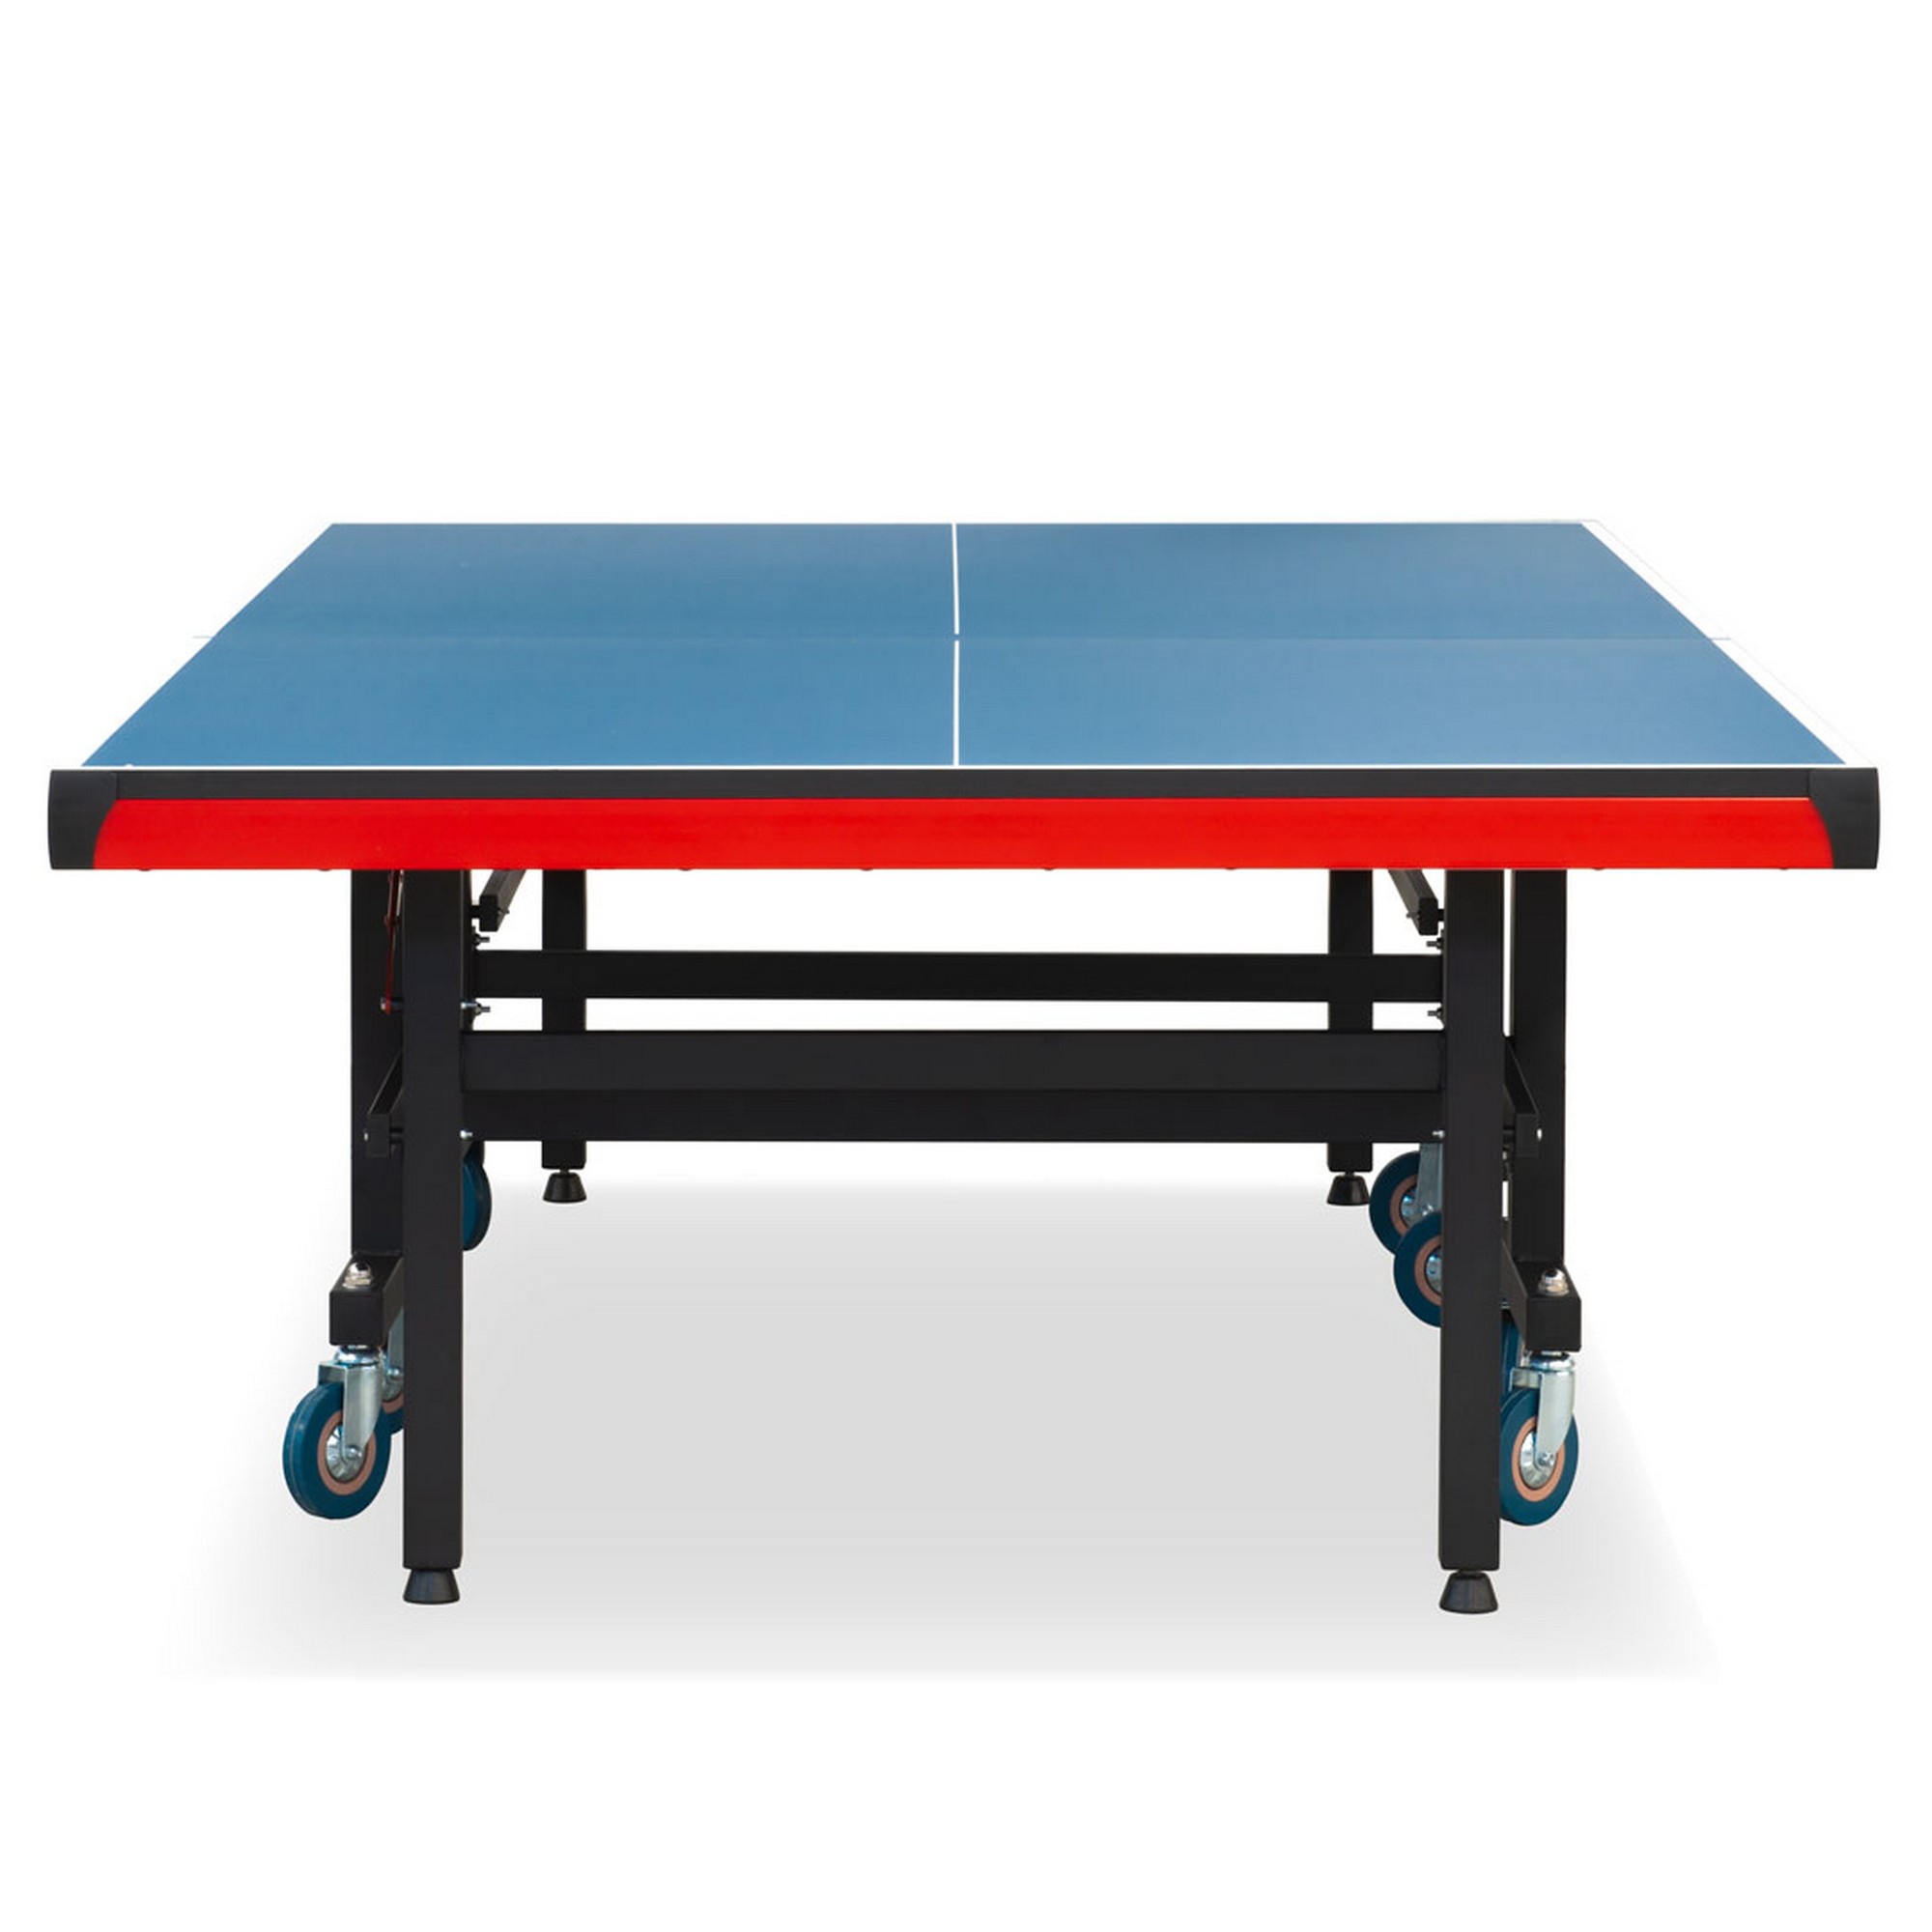 Теннисный стол складной для помещений S-380 Winner 51.380.02.0 2000_2000